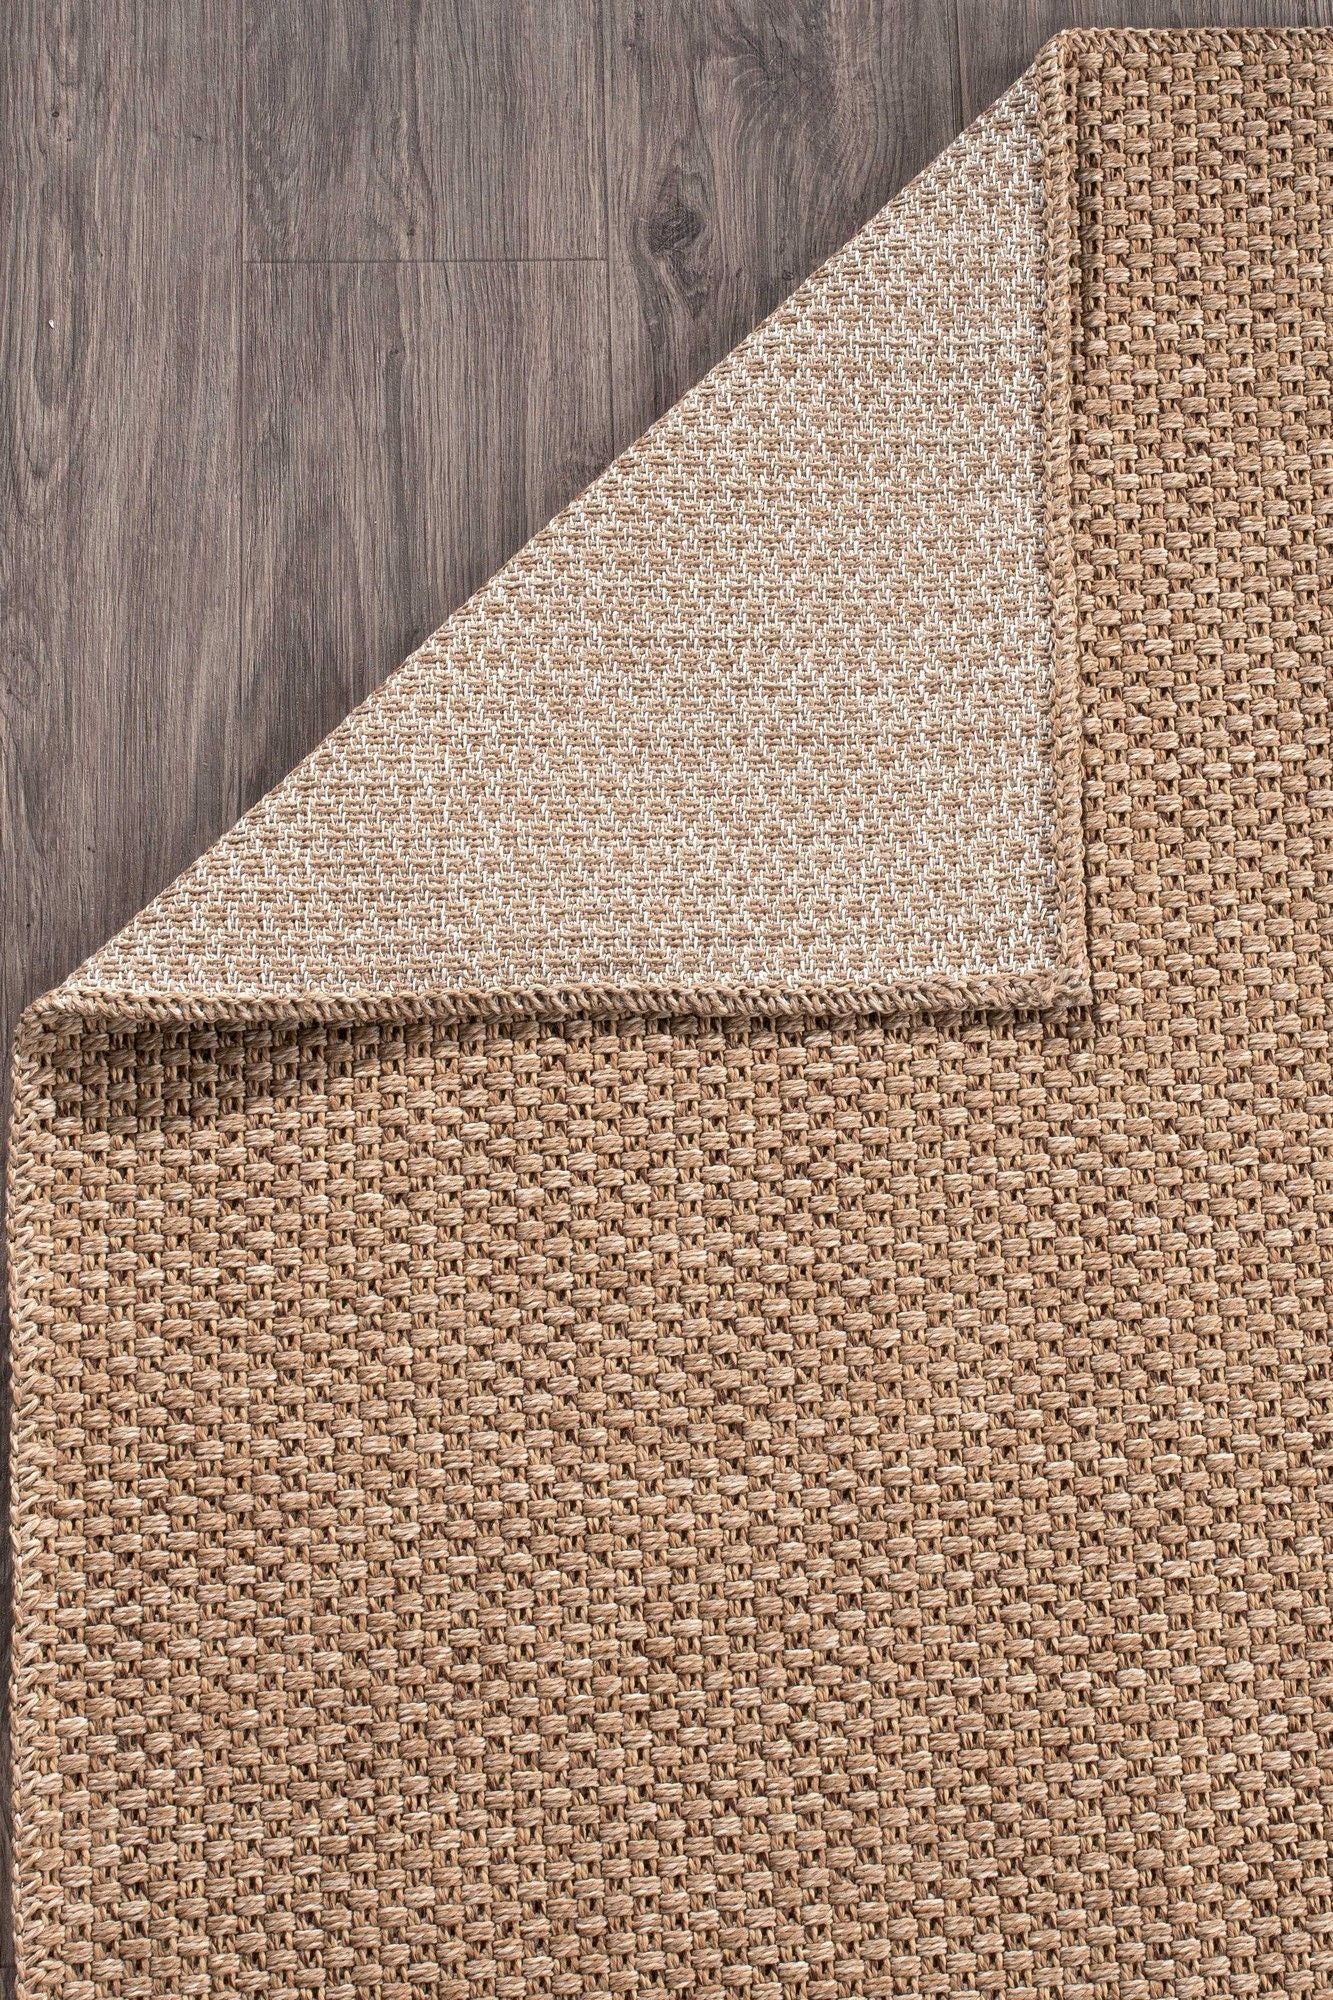 Rusticana 3101 - Hall Carpet (200 x 450)